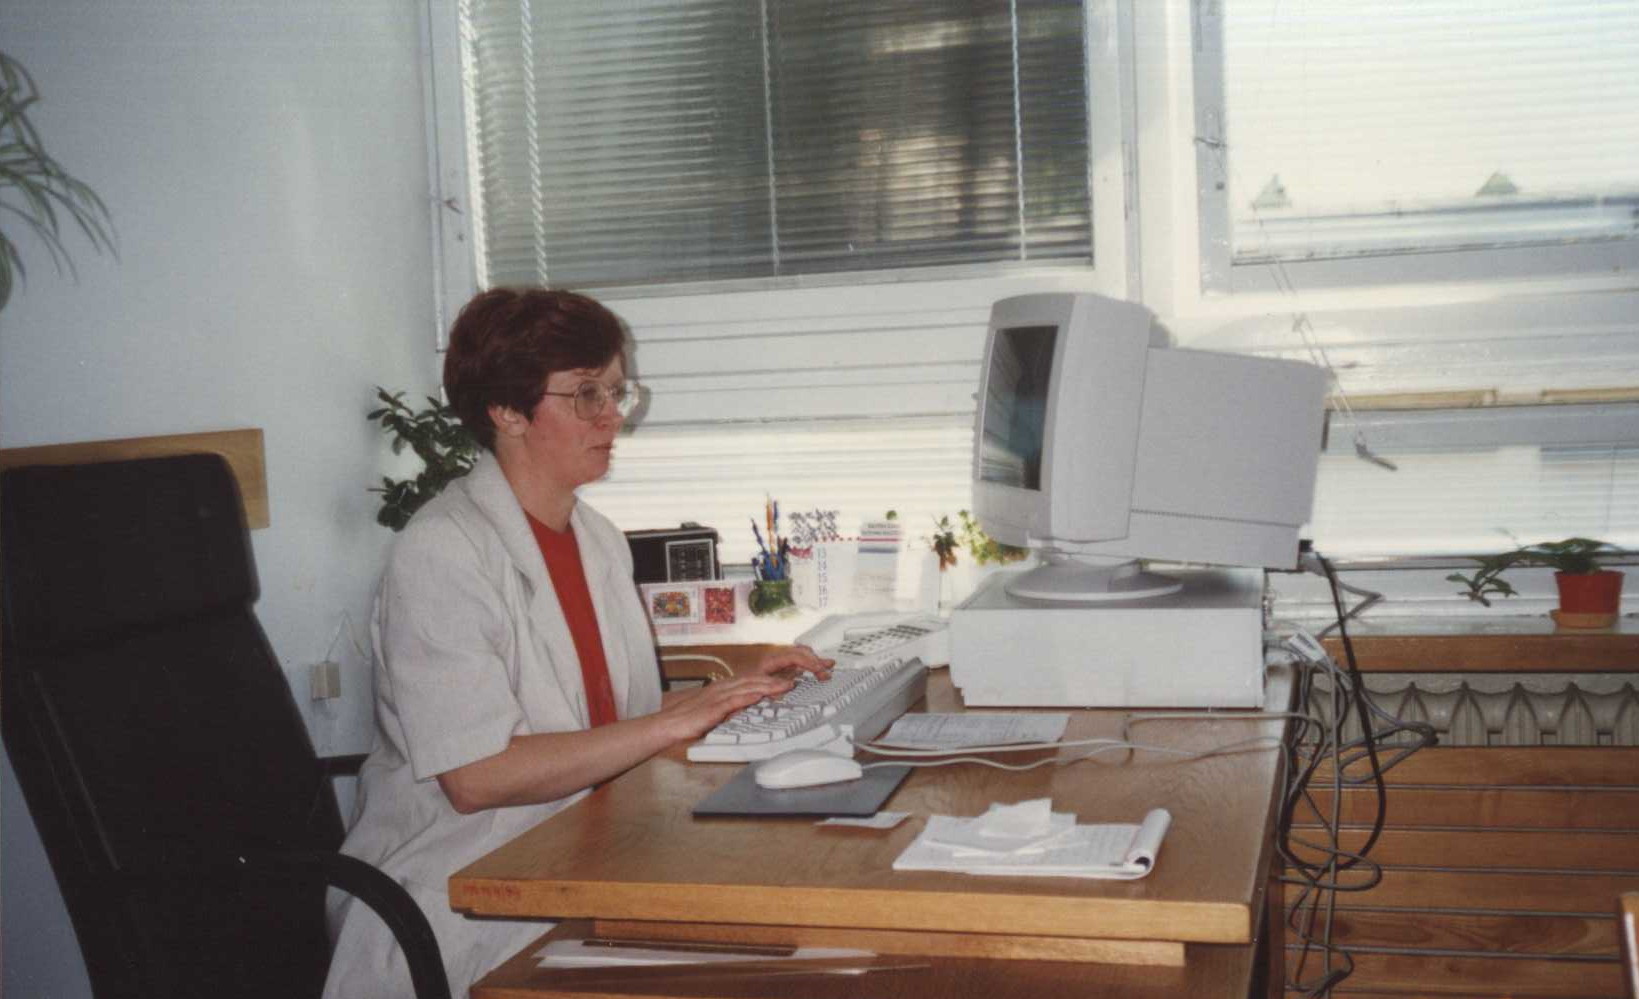 Pomieszczenie biurowe. Siedząca przy biurku i pracująca przy komputerze kobieta w okularach, dyrektor Biblioteki Politechniki Białostockiej mgr Barbara Kubiak.